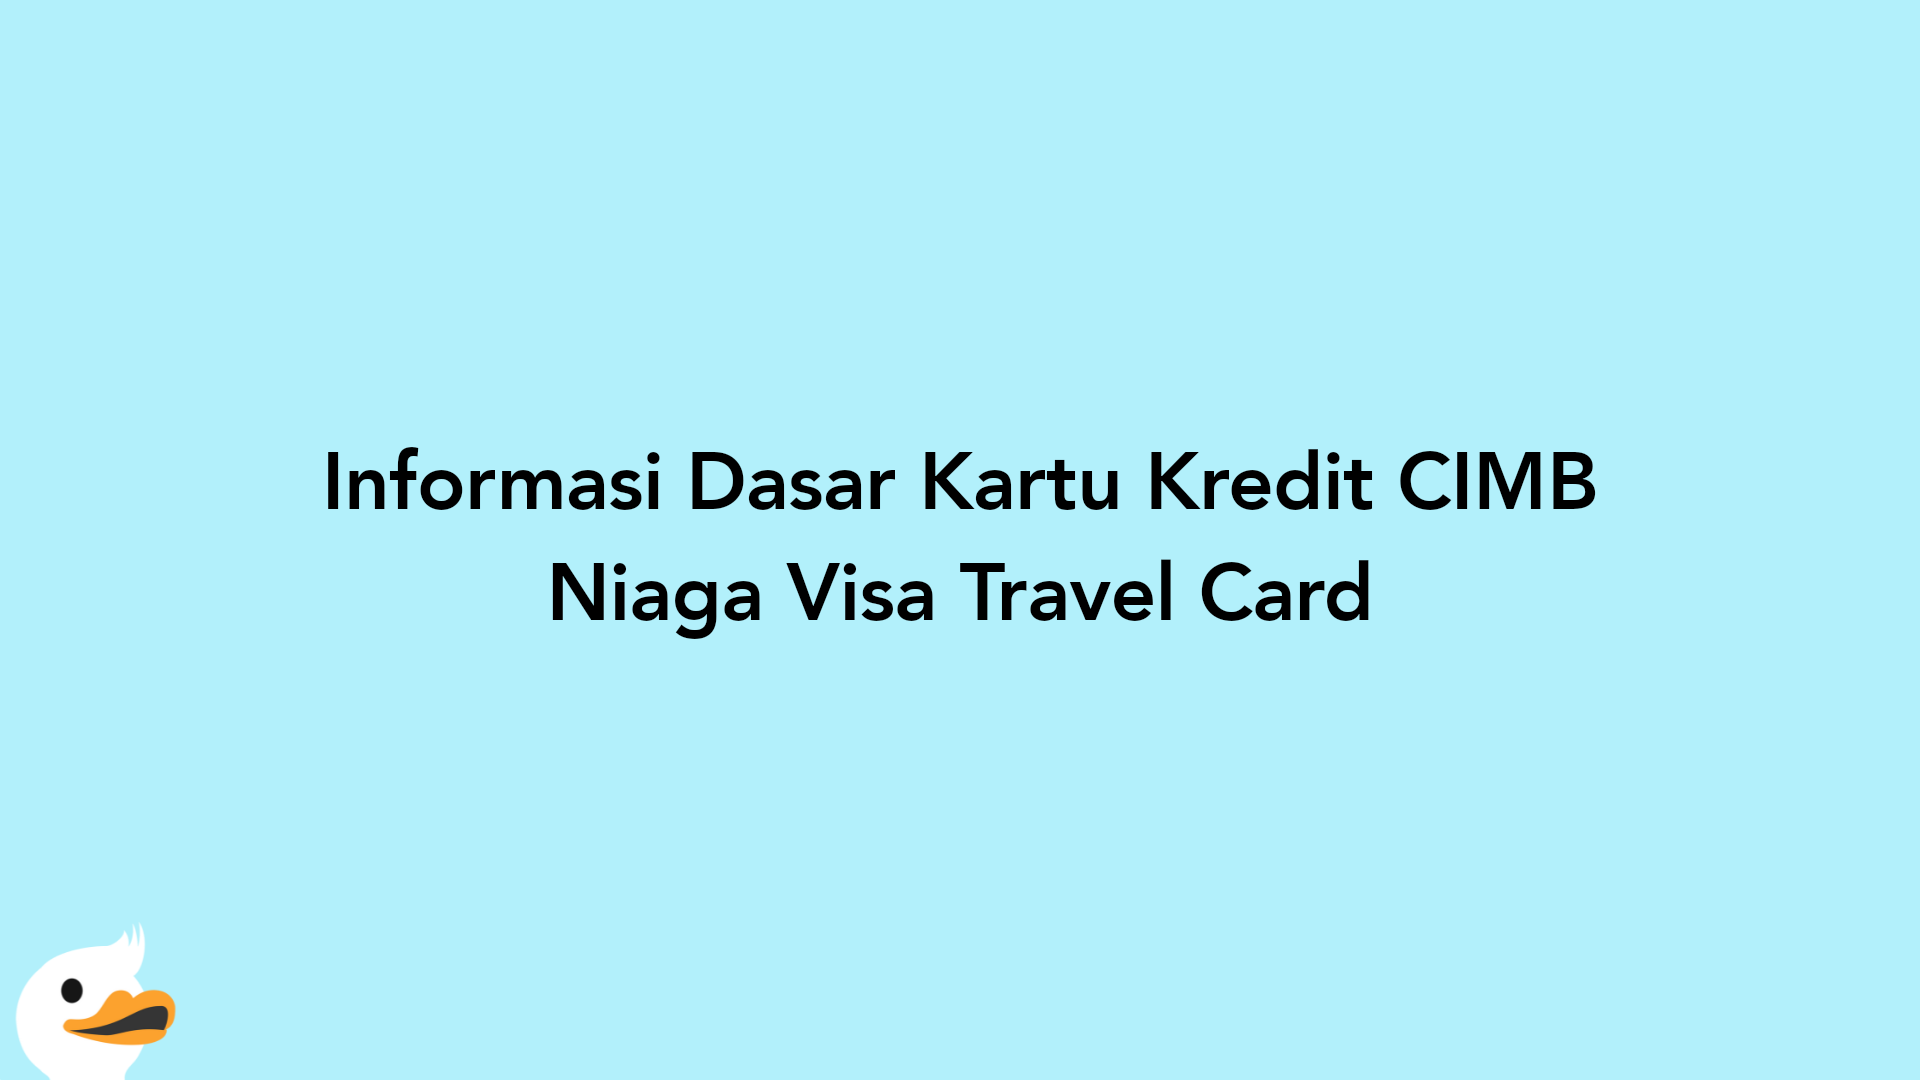 Informasi Dasar Kartu Kredit CIMB Niaga Visa Travel Card